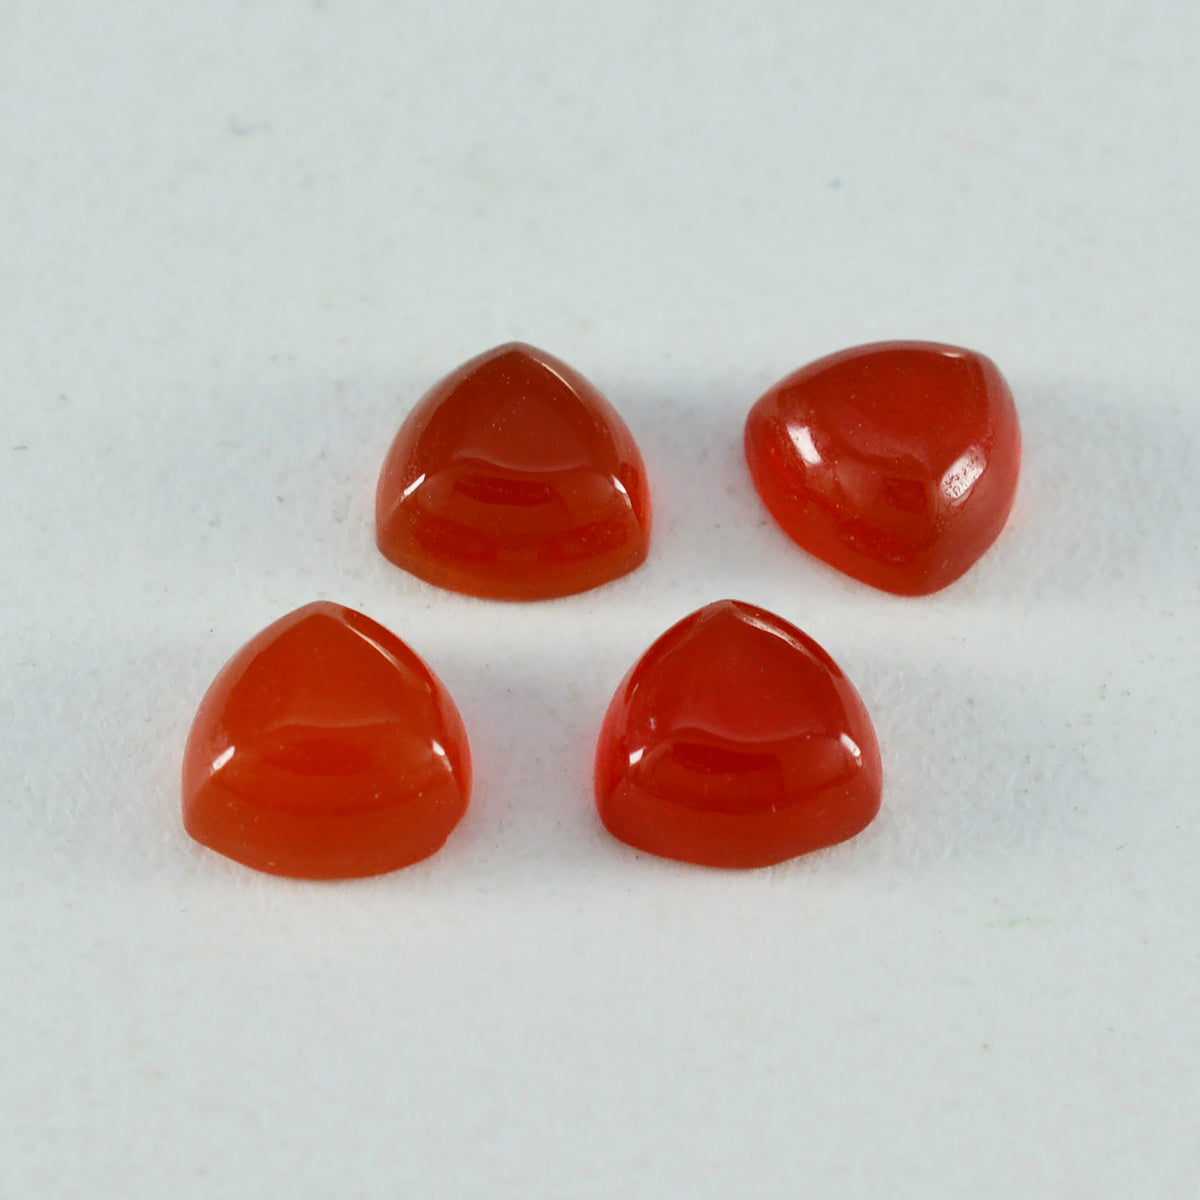 Riyogems 1pc cabochon onyx rouge 10x10mm forme trillion grande qualité pierre précieuse en vrac